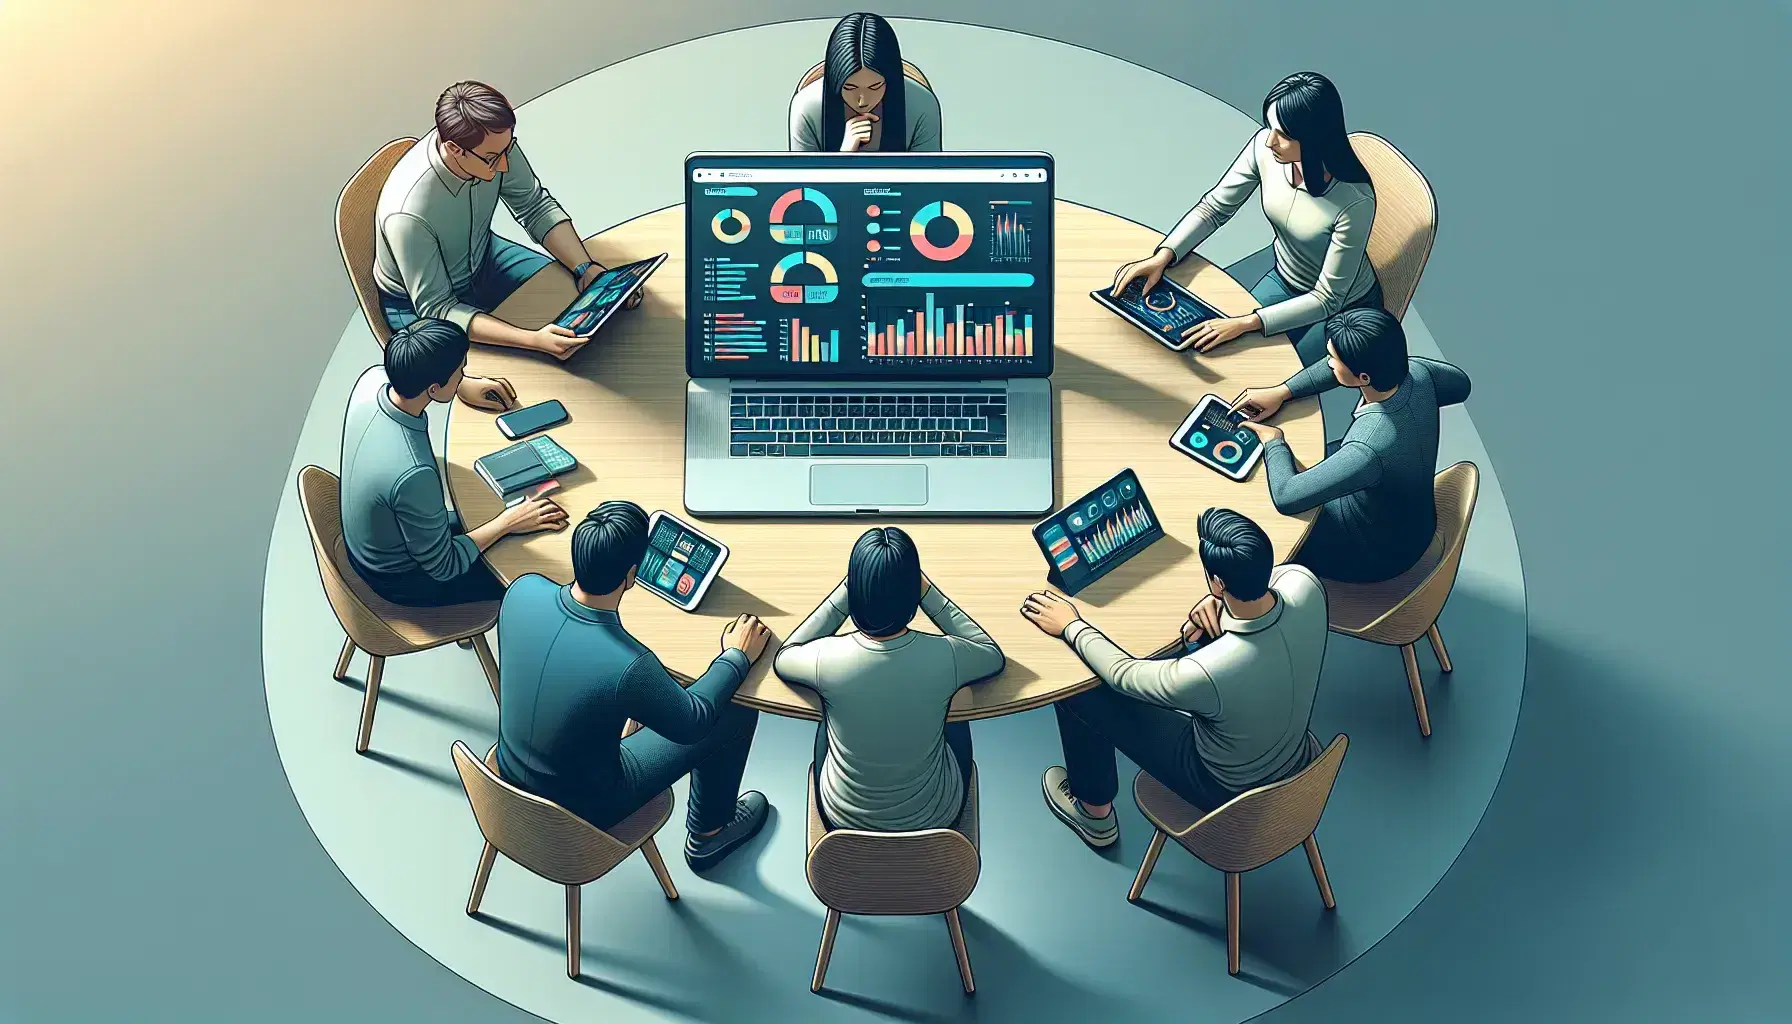 Grupo de tres profesionales trabajando en análisis de datos con dispositivos electrónicos sobre una mesa redonda en una sala de reuniones iluminada suavemente.